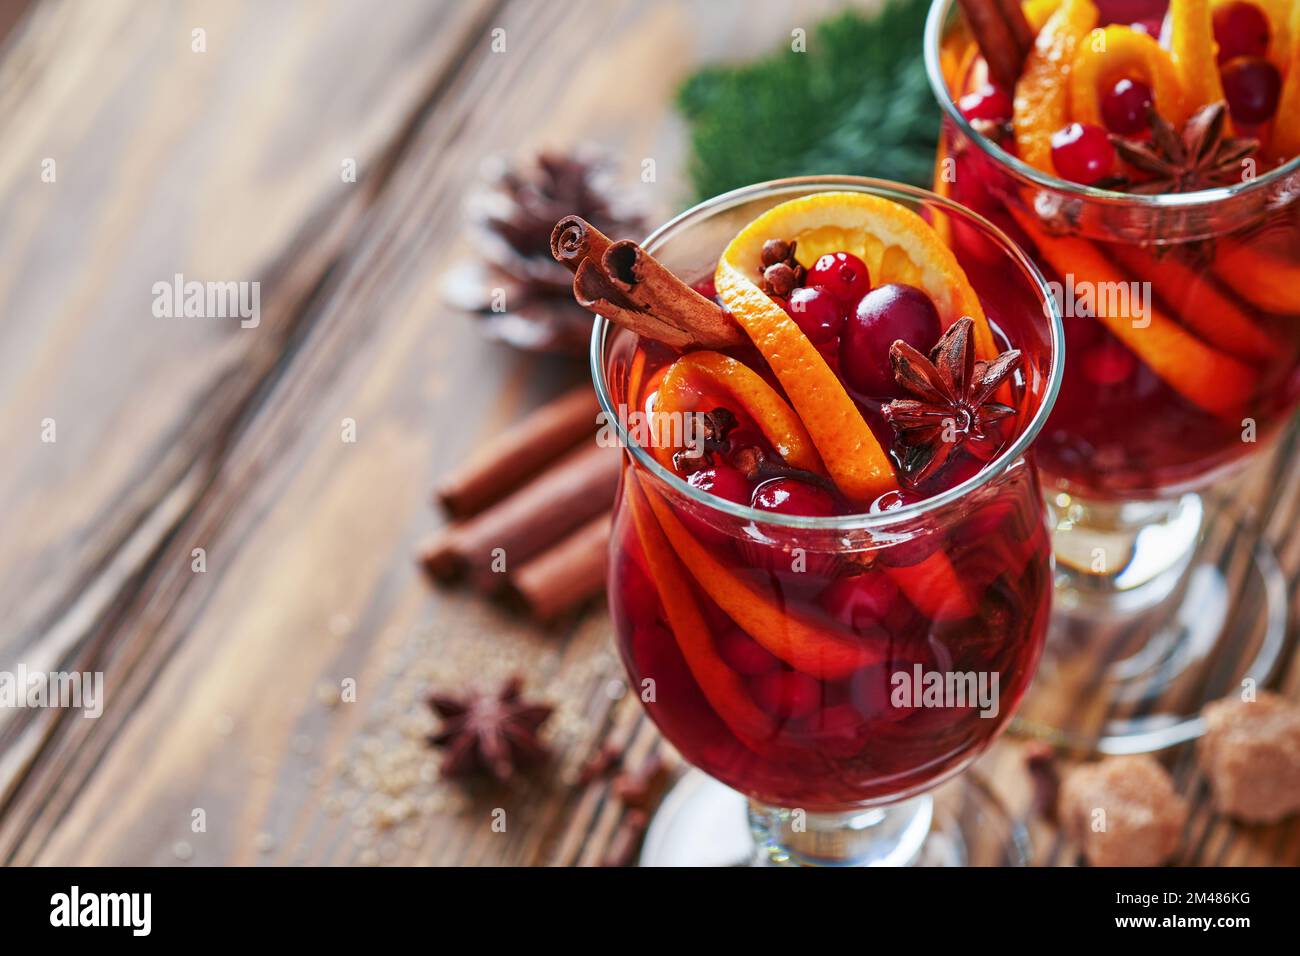 Vin chaud chaud chaud de Noël. Verres de vin chaud aux épices aromatiques cannelle, anis, sucre et branches de sapin avec bokeh et décorations. Trait Banque D'Images